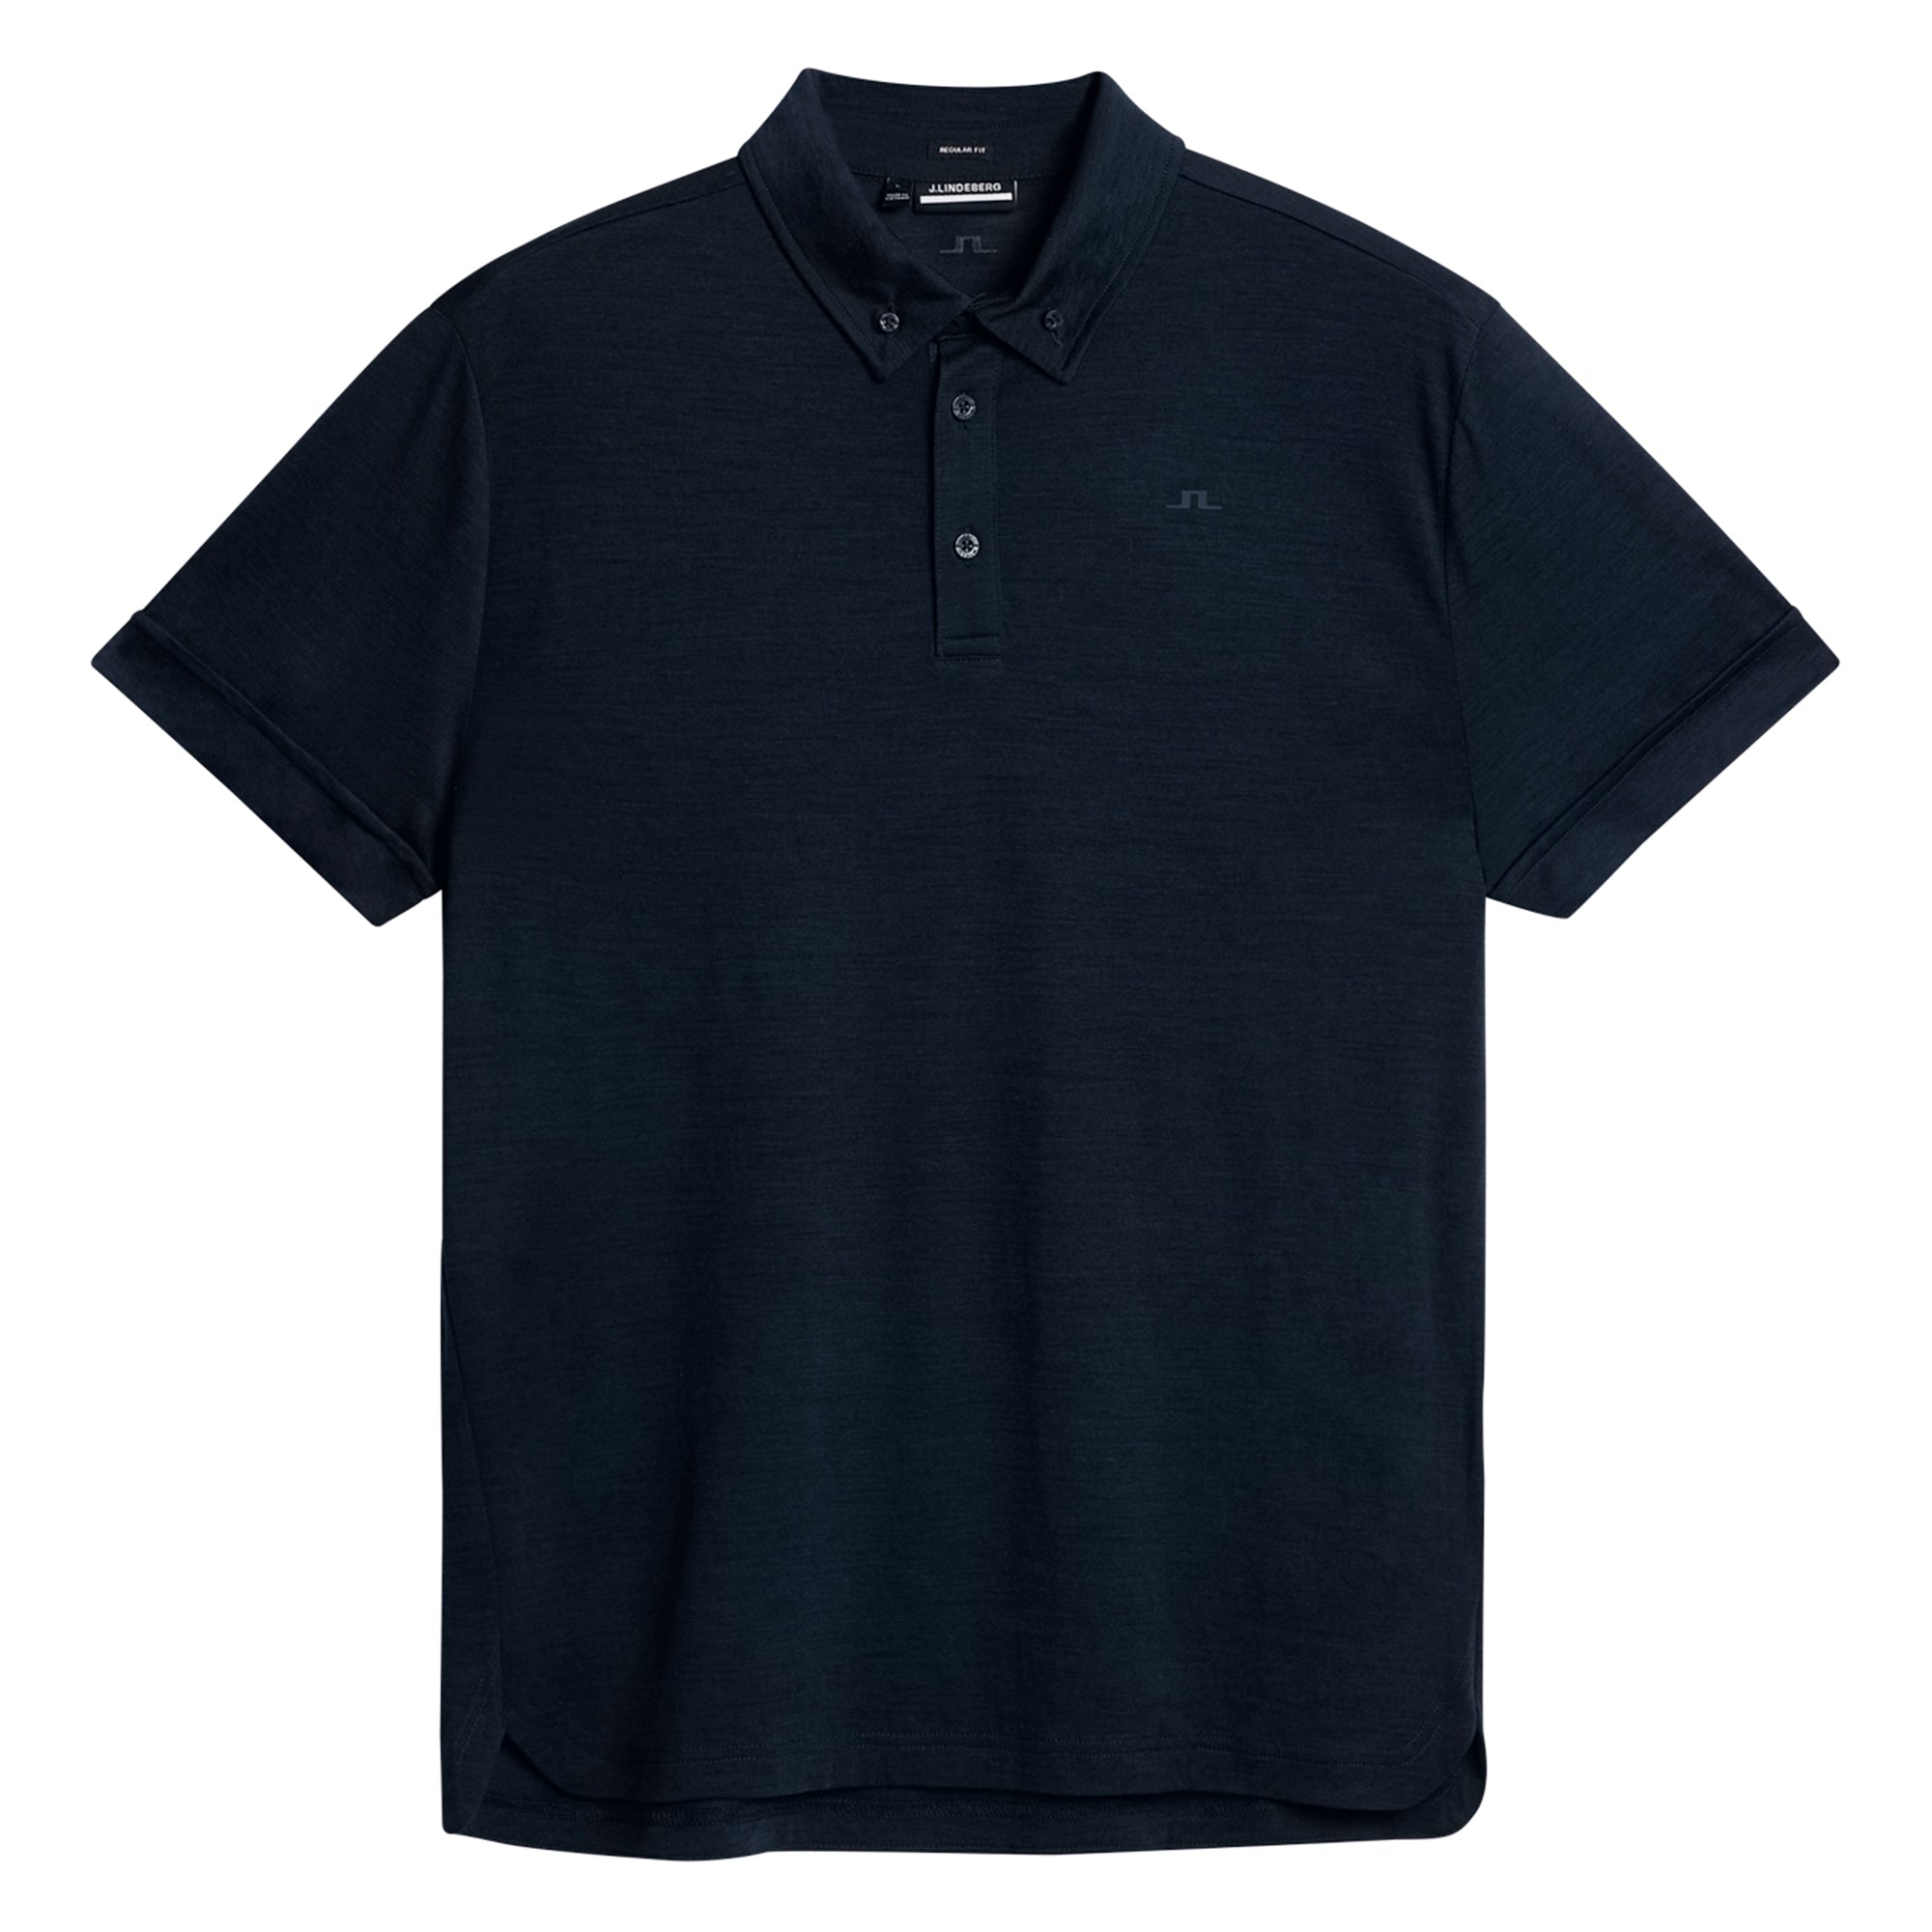 j-lindeberg-golf-paz-polo-shirt-gmjt08895-jl-navy-6855